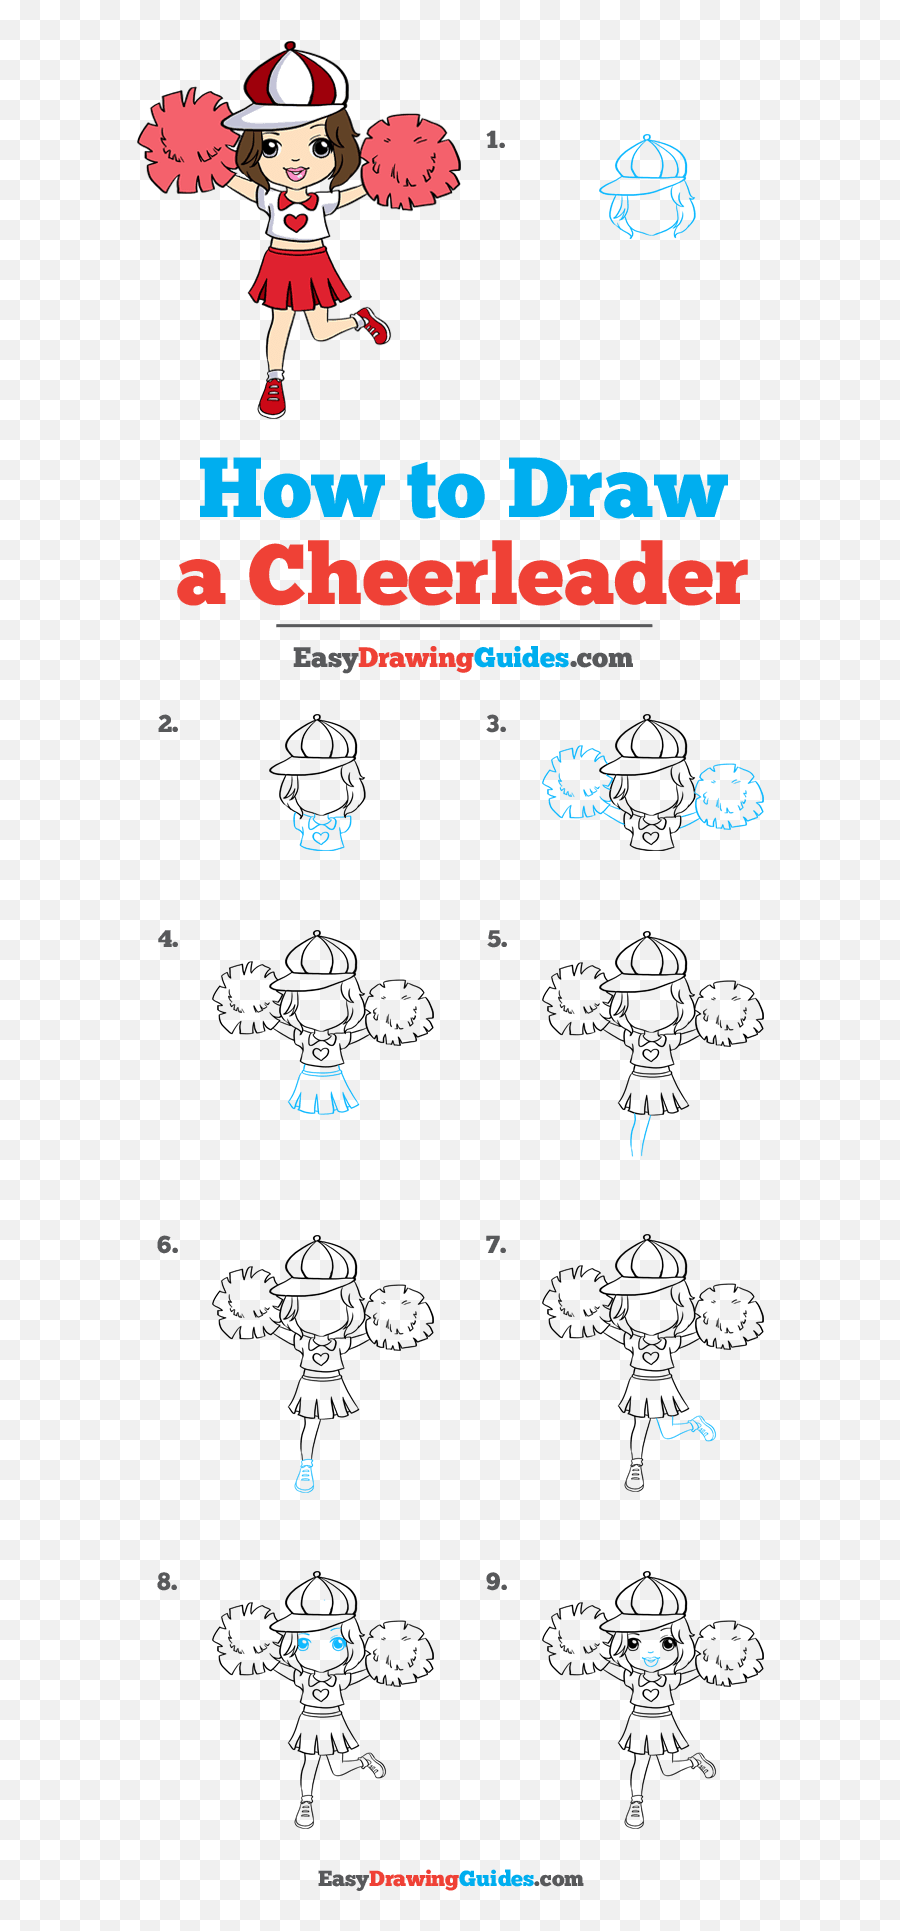 How To Draw A Cheerleader - Step By Step Snake Drawing Easy Emoji,Cheerleader Emoji